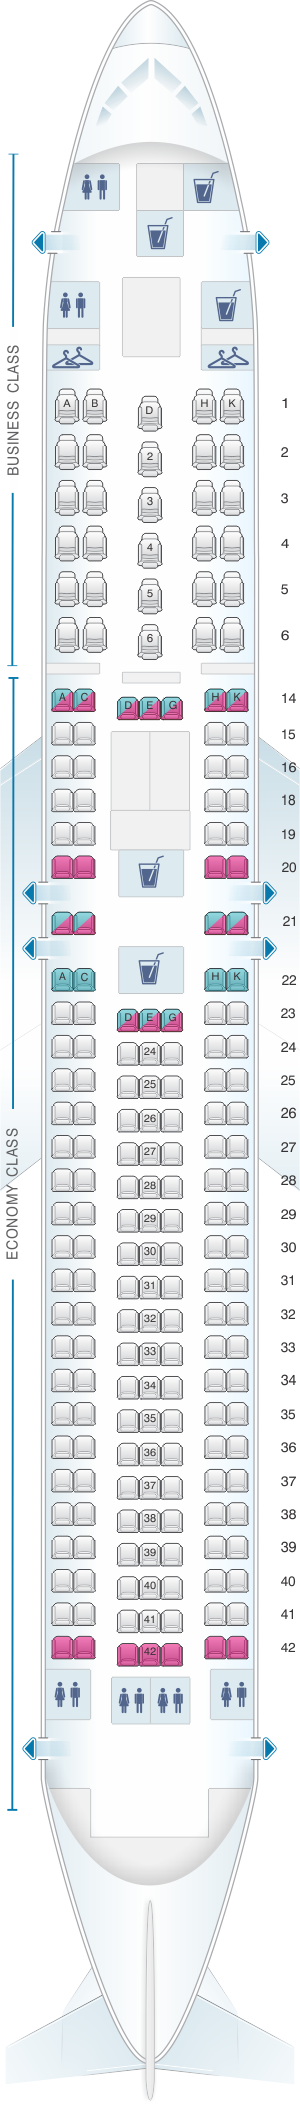 Seat map for LATAM Airlines Brasil Boeing B767 300ER V1